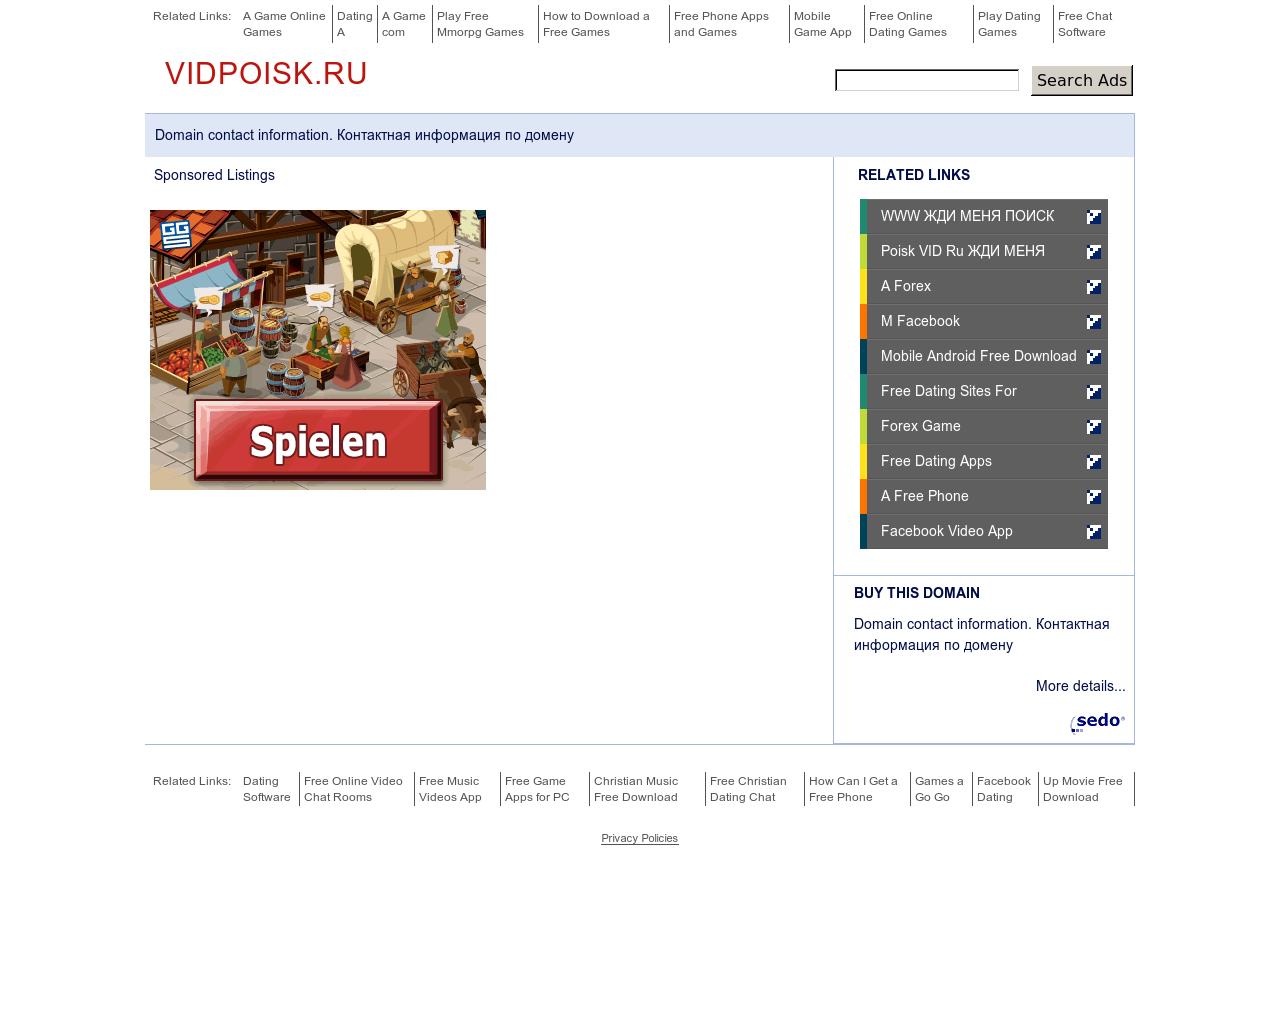 Изображение сайта vidpoisk.ru в разрешении 1280x1024